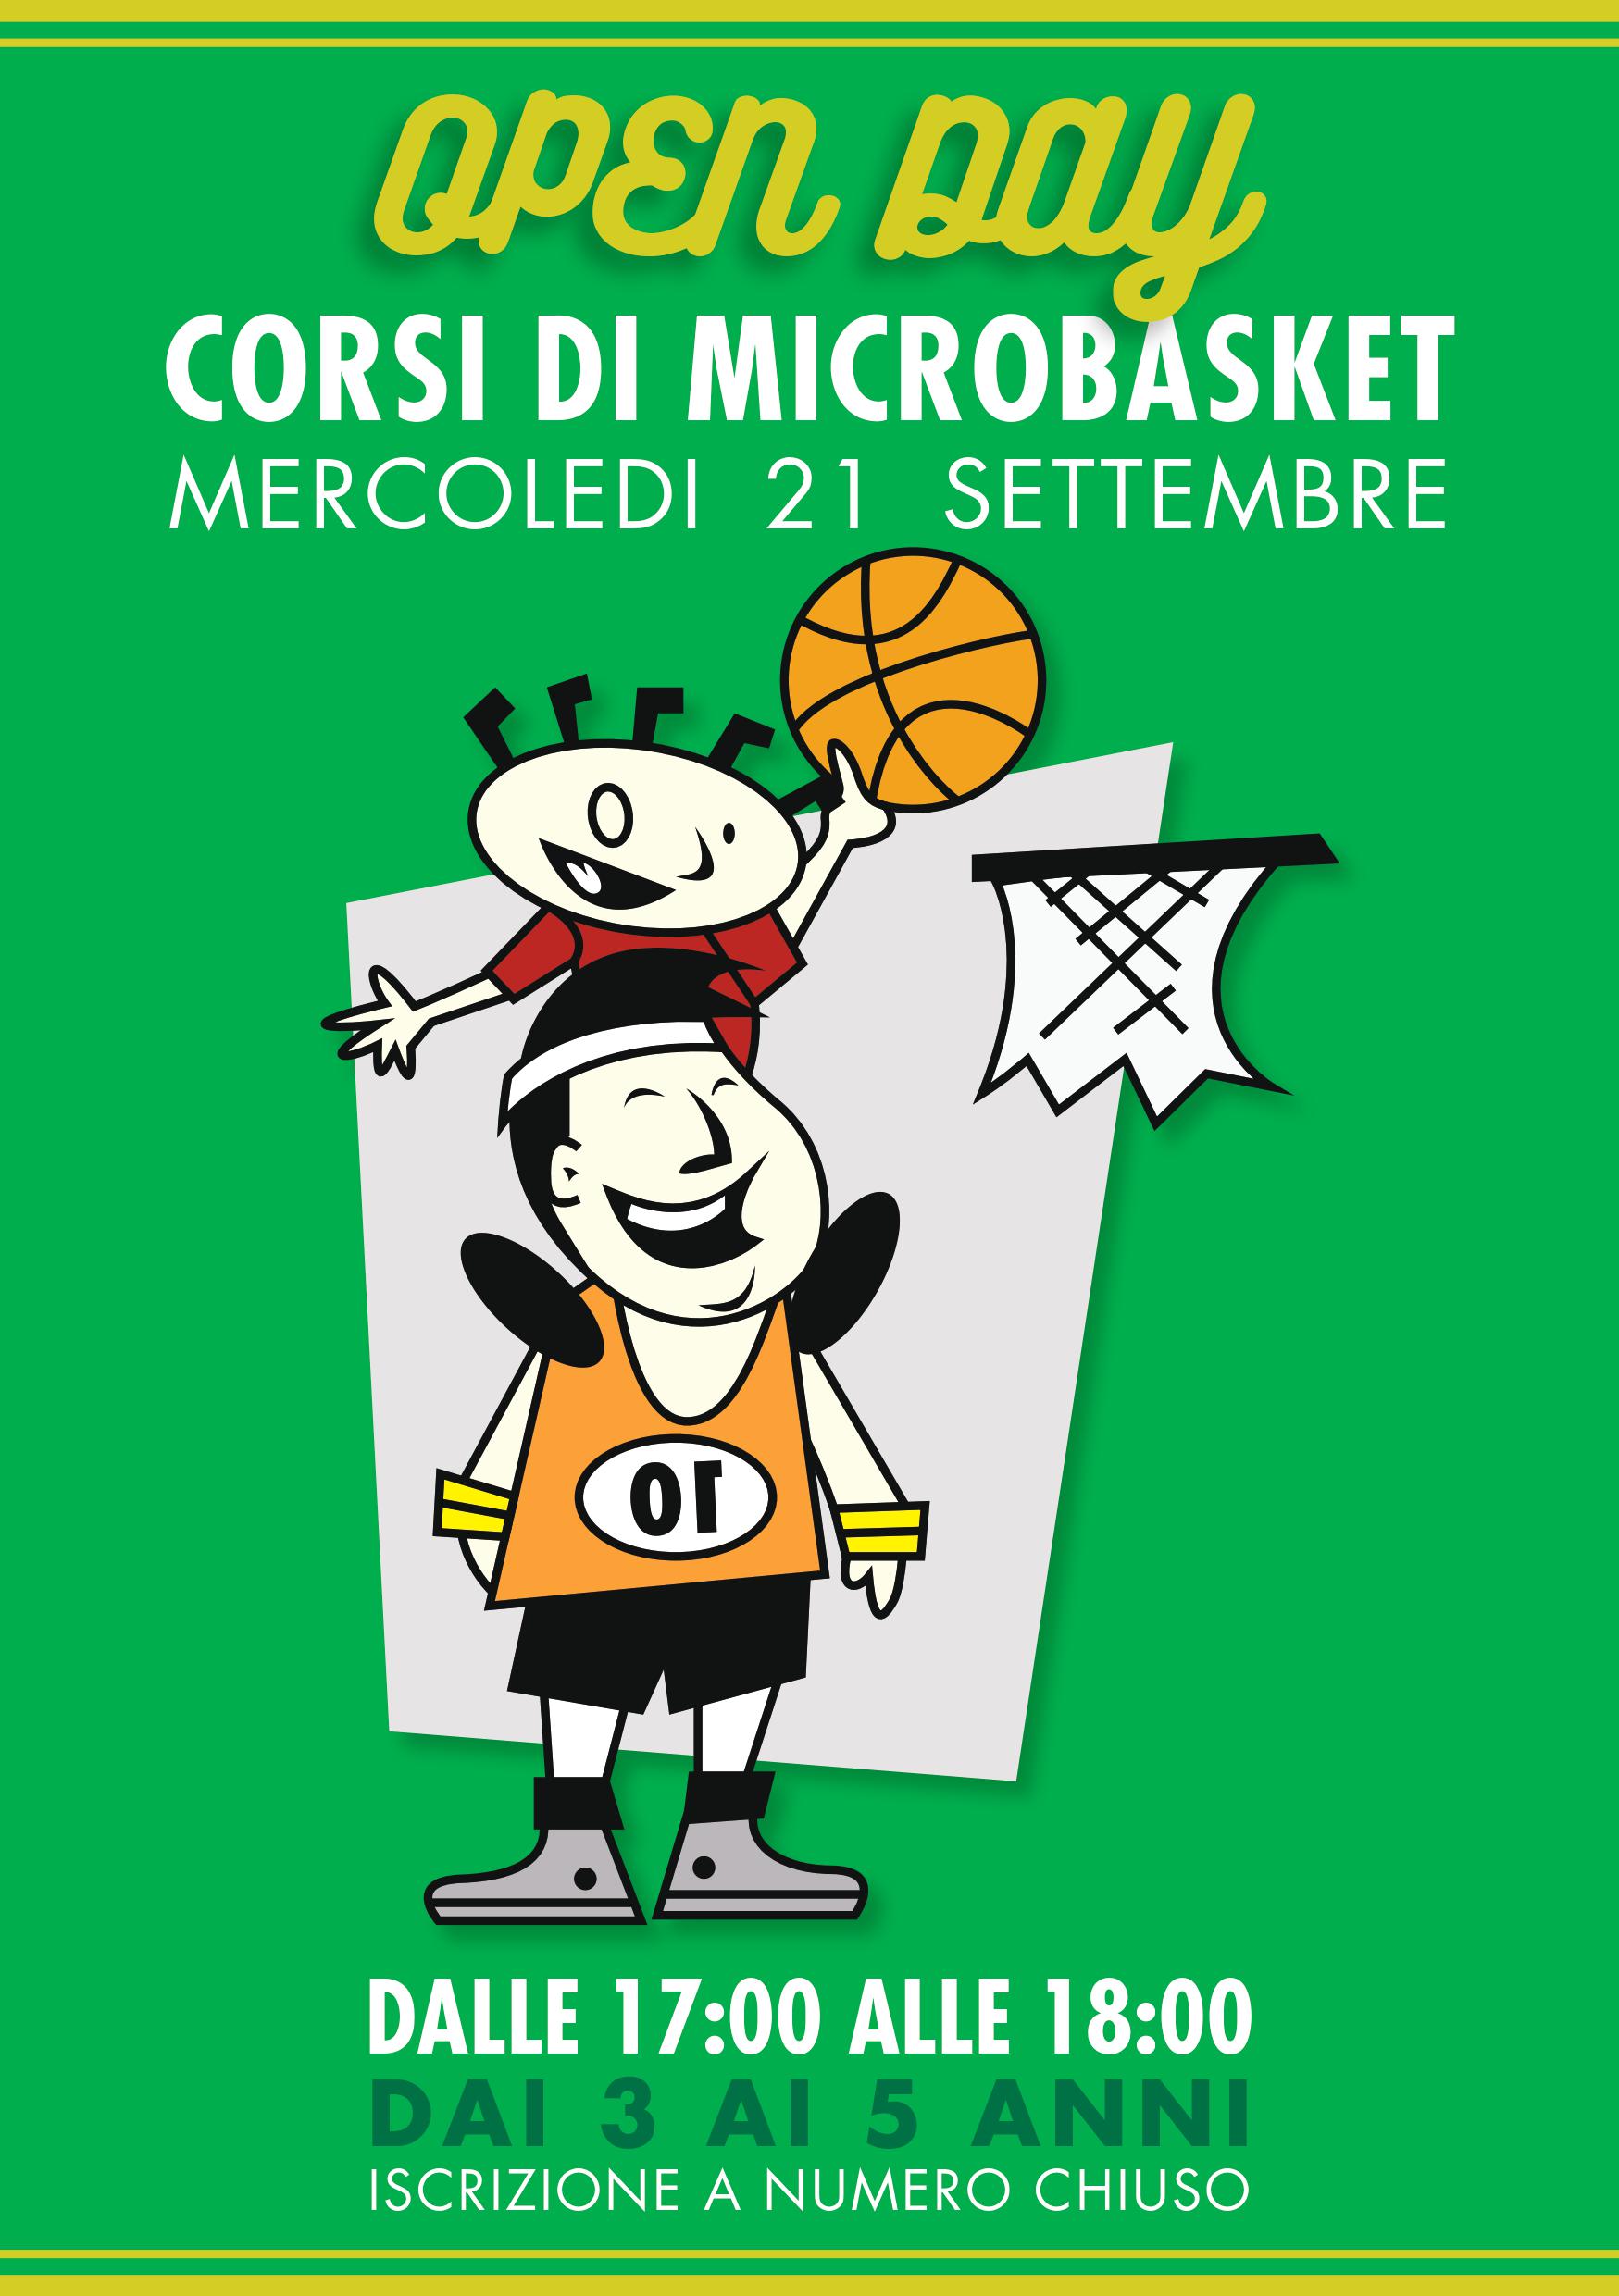 La Libertas Roma Sud vi invita all’Open Day di microbasket il 21 settembre!